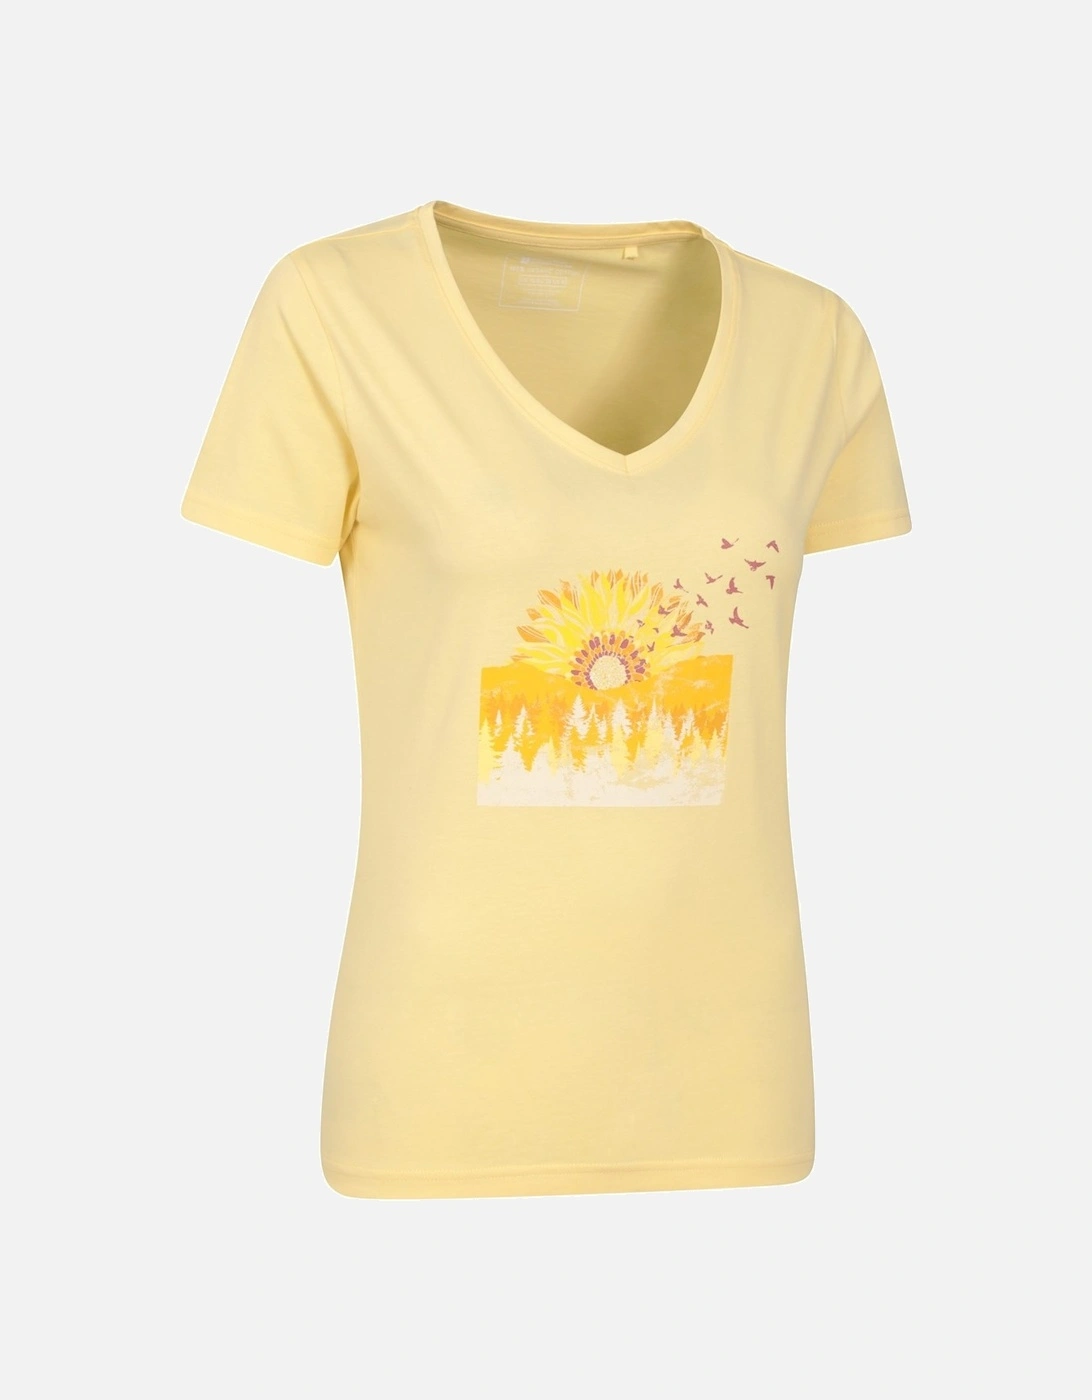 Womens/Ladies Sunflower T-Shirt